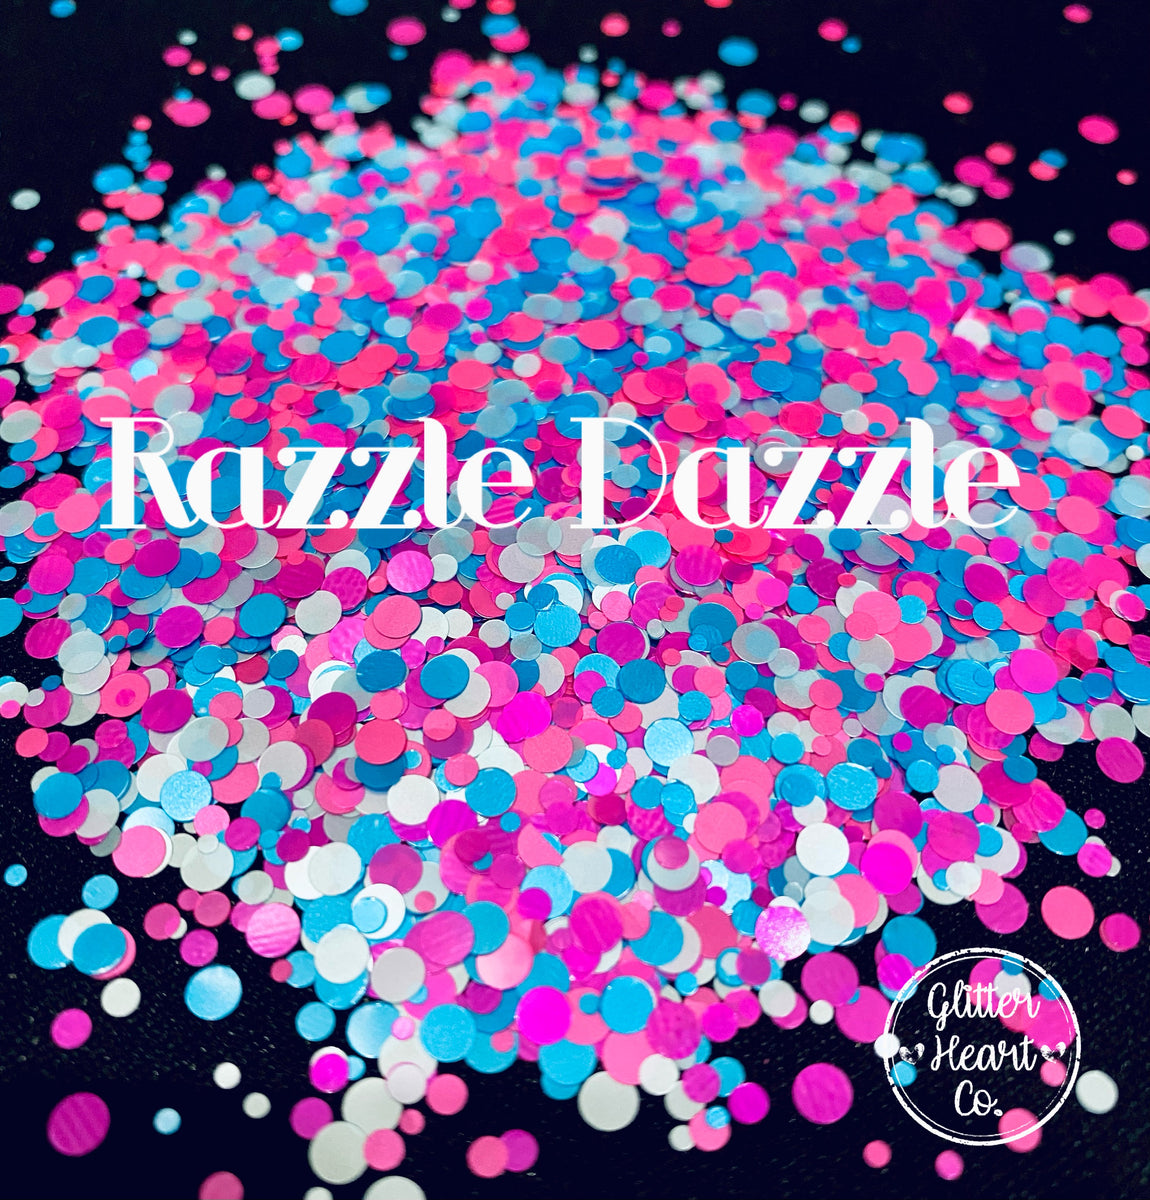 Razzle Dazzle White Wedding Glitter, Assorted Glitter, Festival